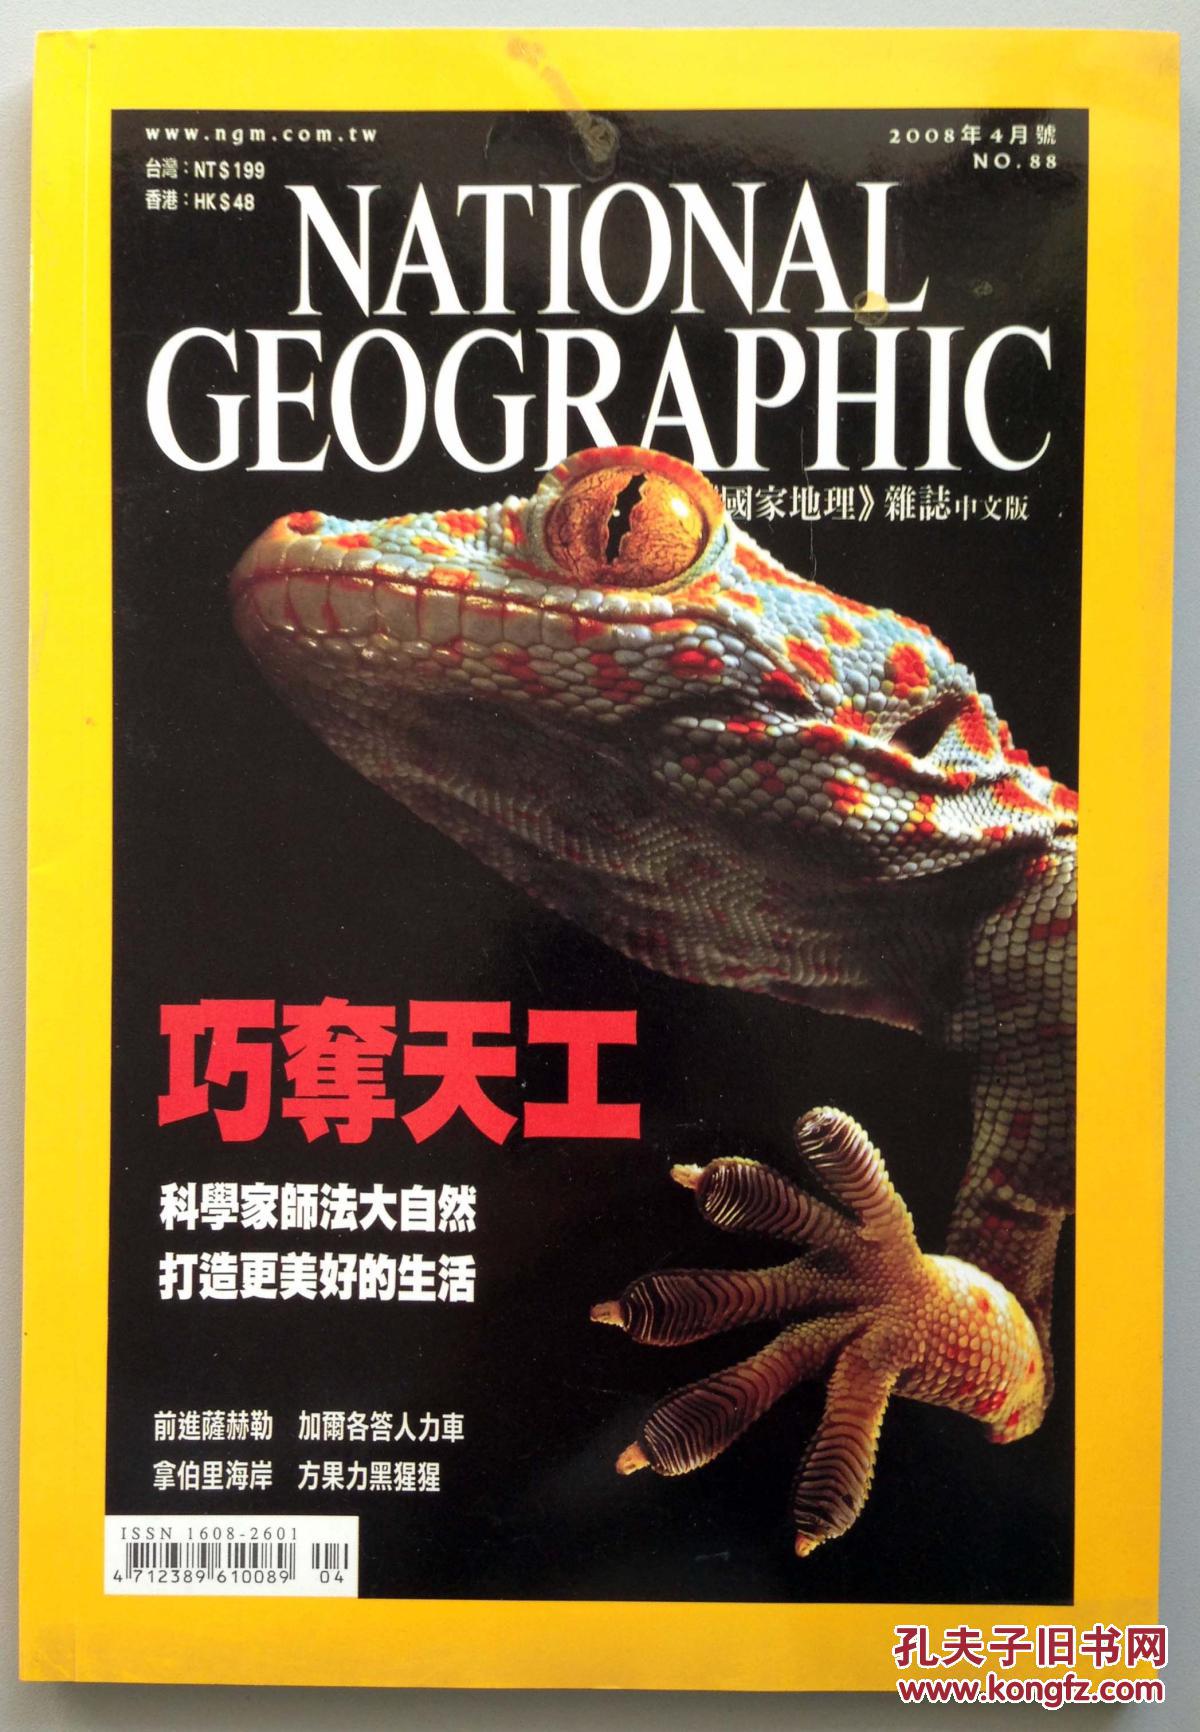 【图】国家地理杂志 NATIONAL GEOGRAPHIC( 2008年 4月)_价格:30.00_网上书店网站_孔夫子旧书网